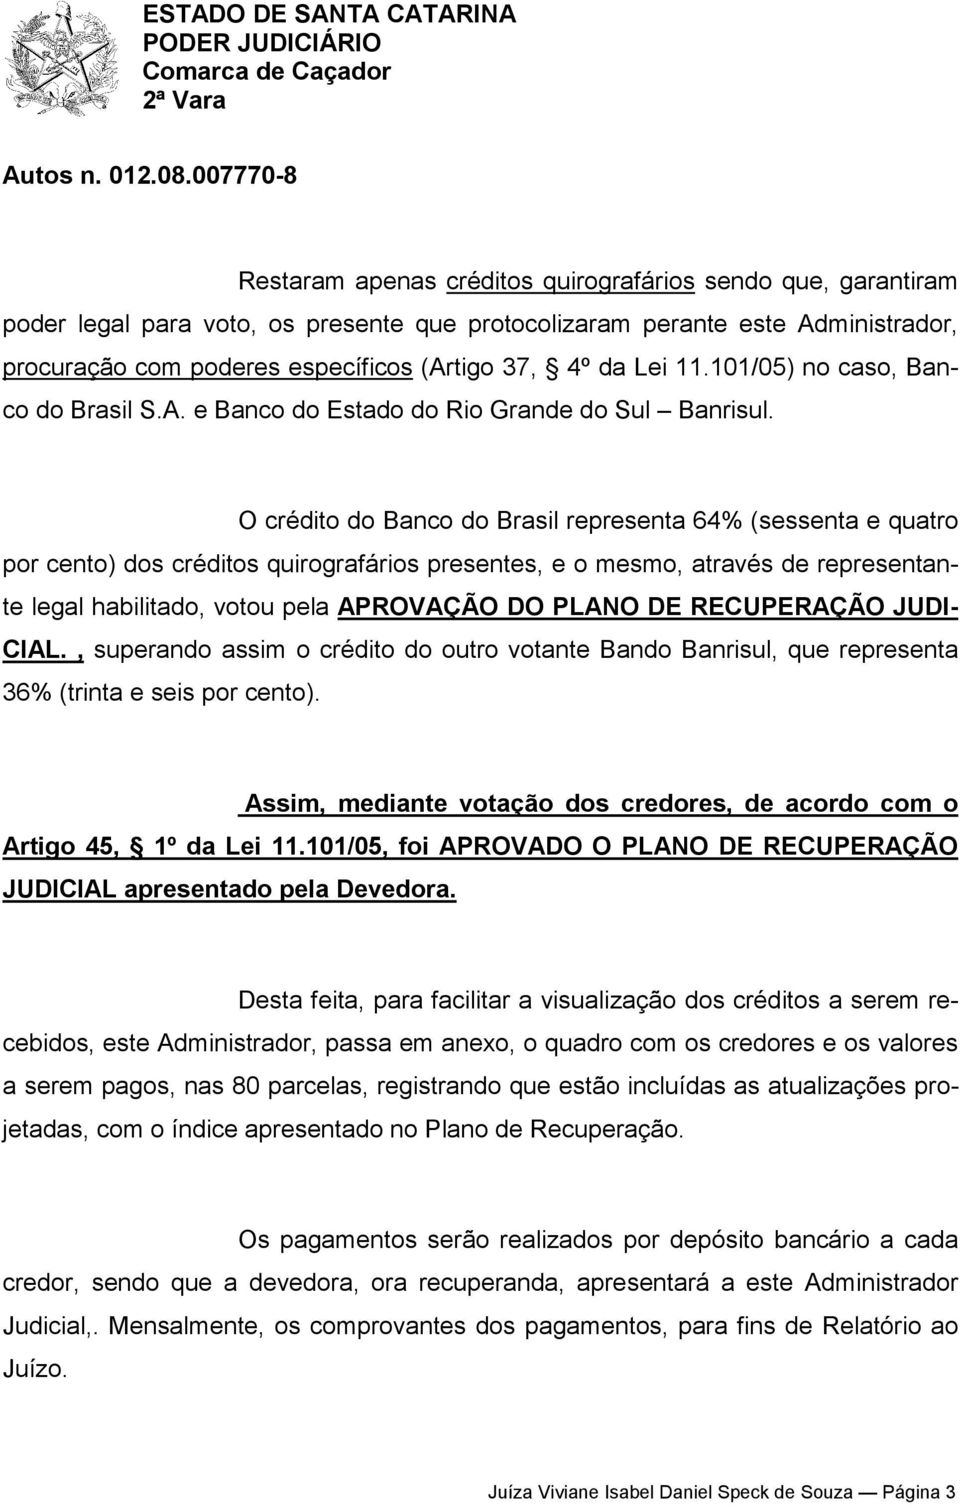 O crédito do Banco do Brasil representa 64% (sessenta e quatro por cento) dos créditos quirografários presentes, e o mesmo, através de representante legal habilitado, votou pela APROVAÇÃO DO PLANO DE